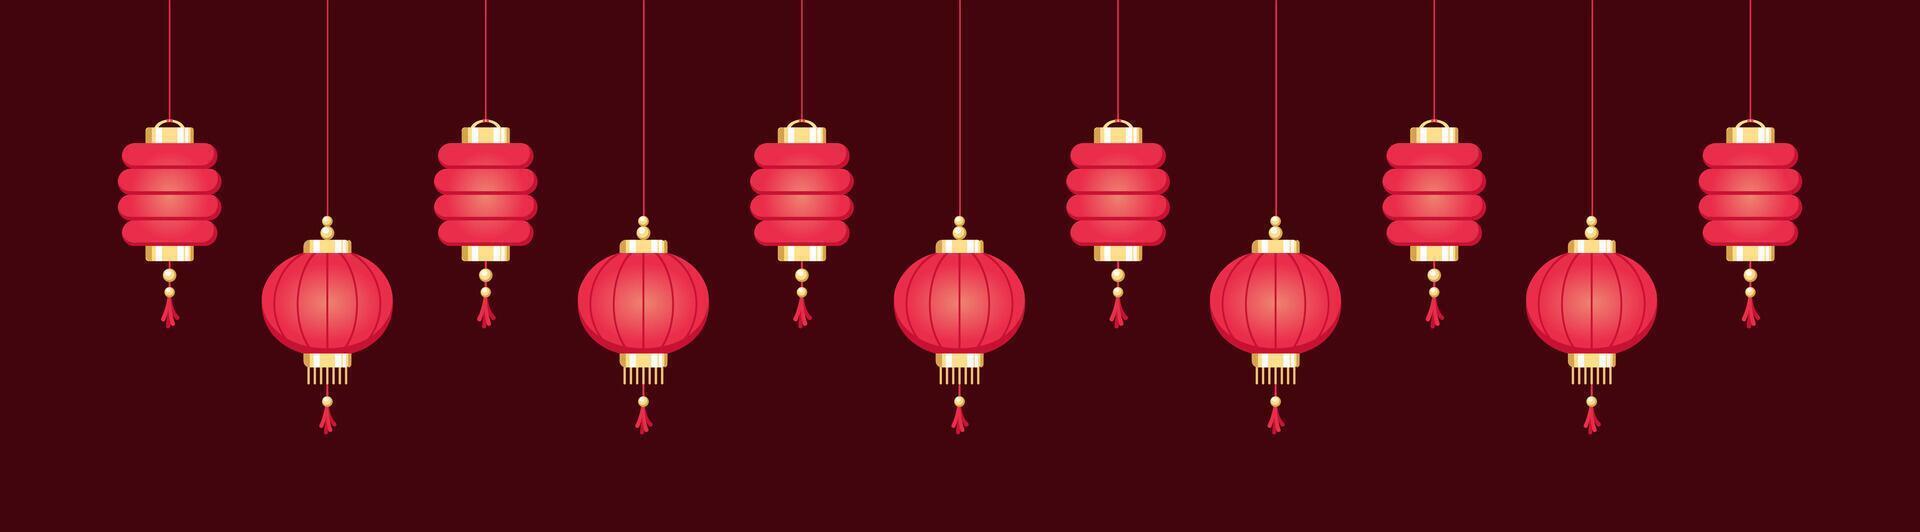 suspensão chinês lanternas bandeira fronteira, lunar Novo ano e meio do outono festival gráfico vetor